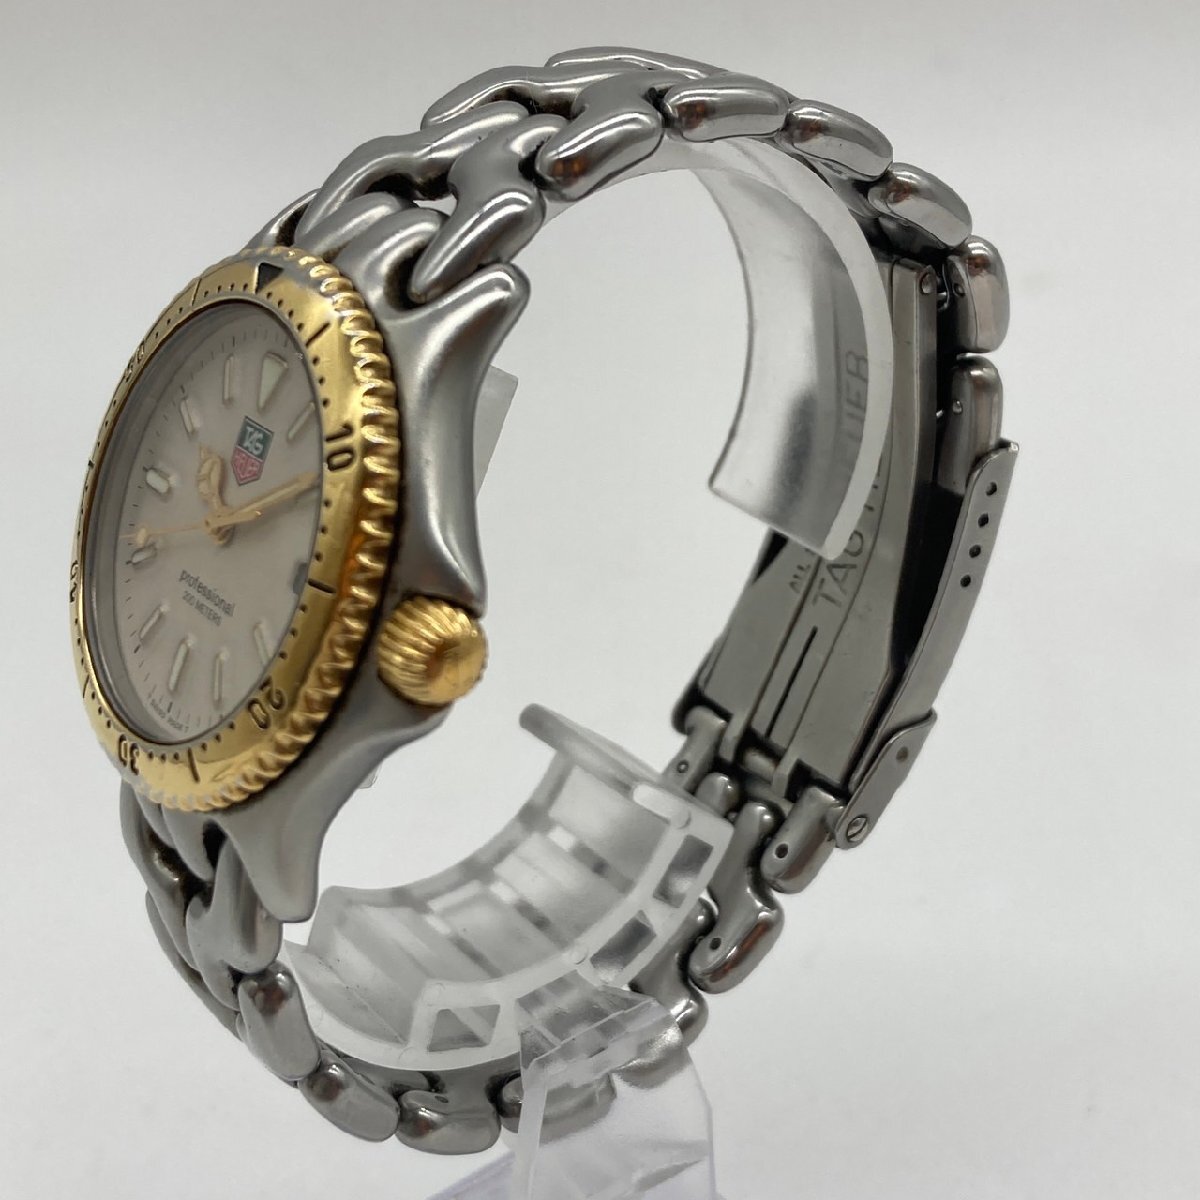 TAG HEUER タグホイヤー セル プロフェッショナル200M メンズ 腕時計 コンビカラー S95 813K_画像2